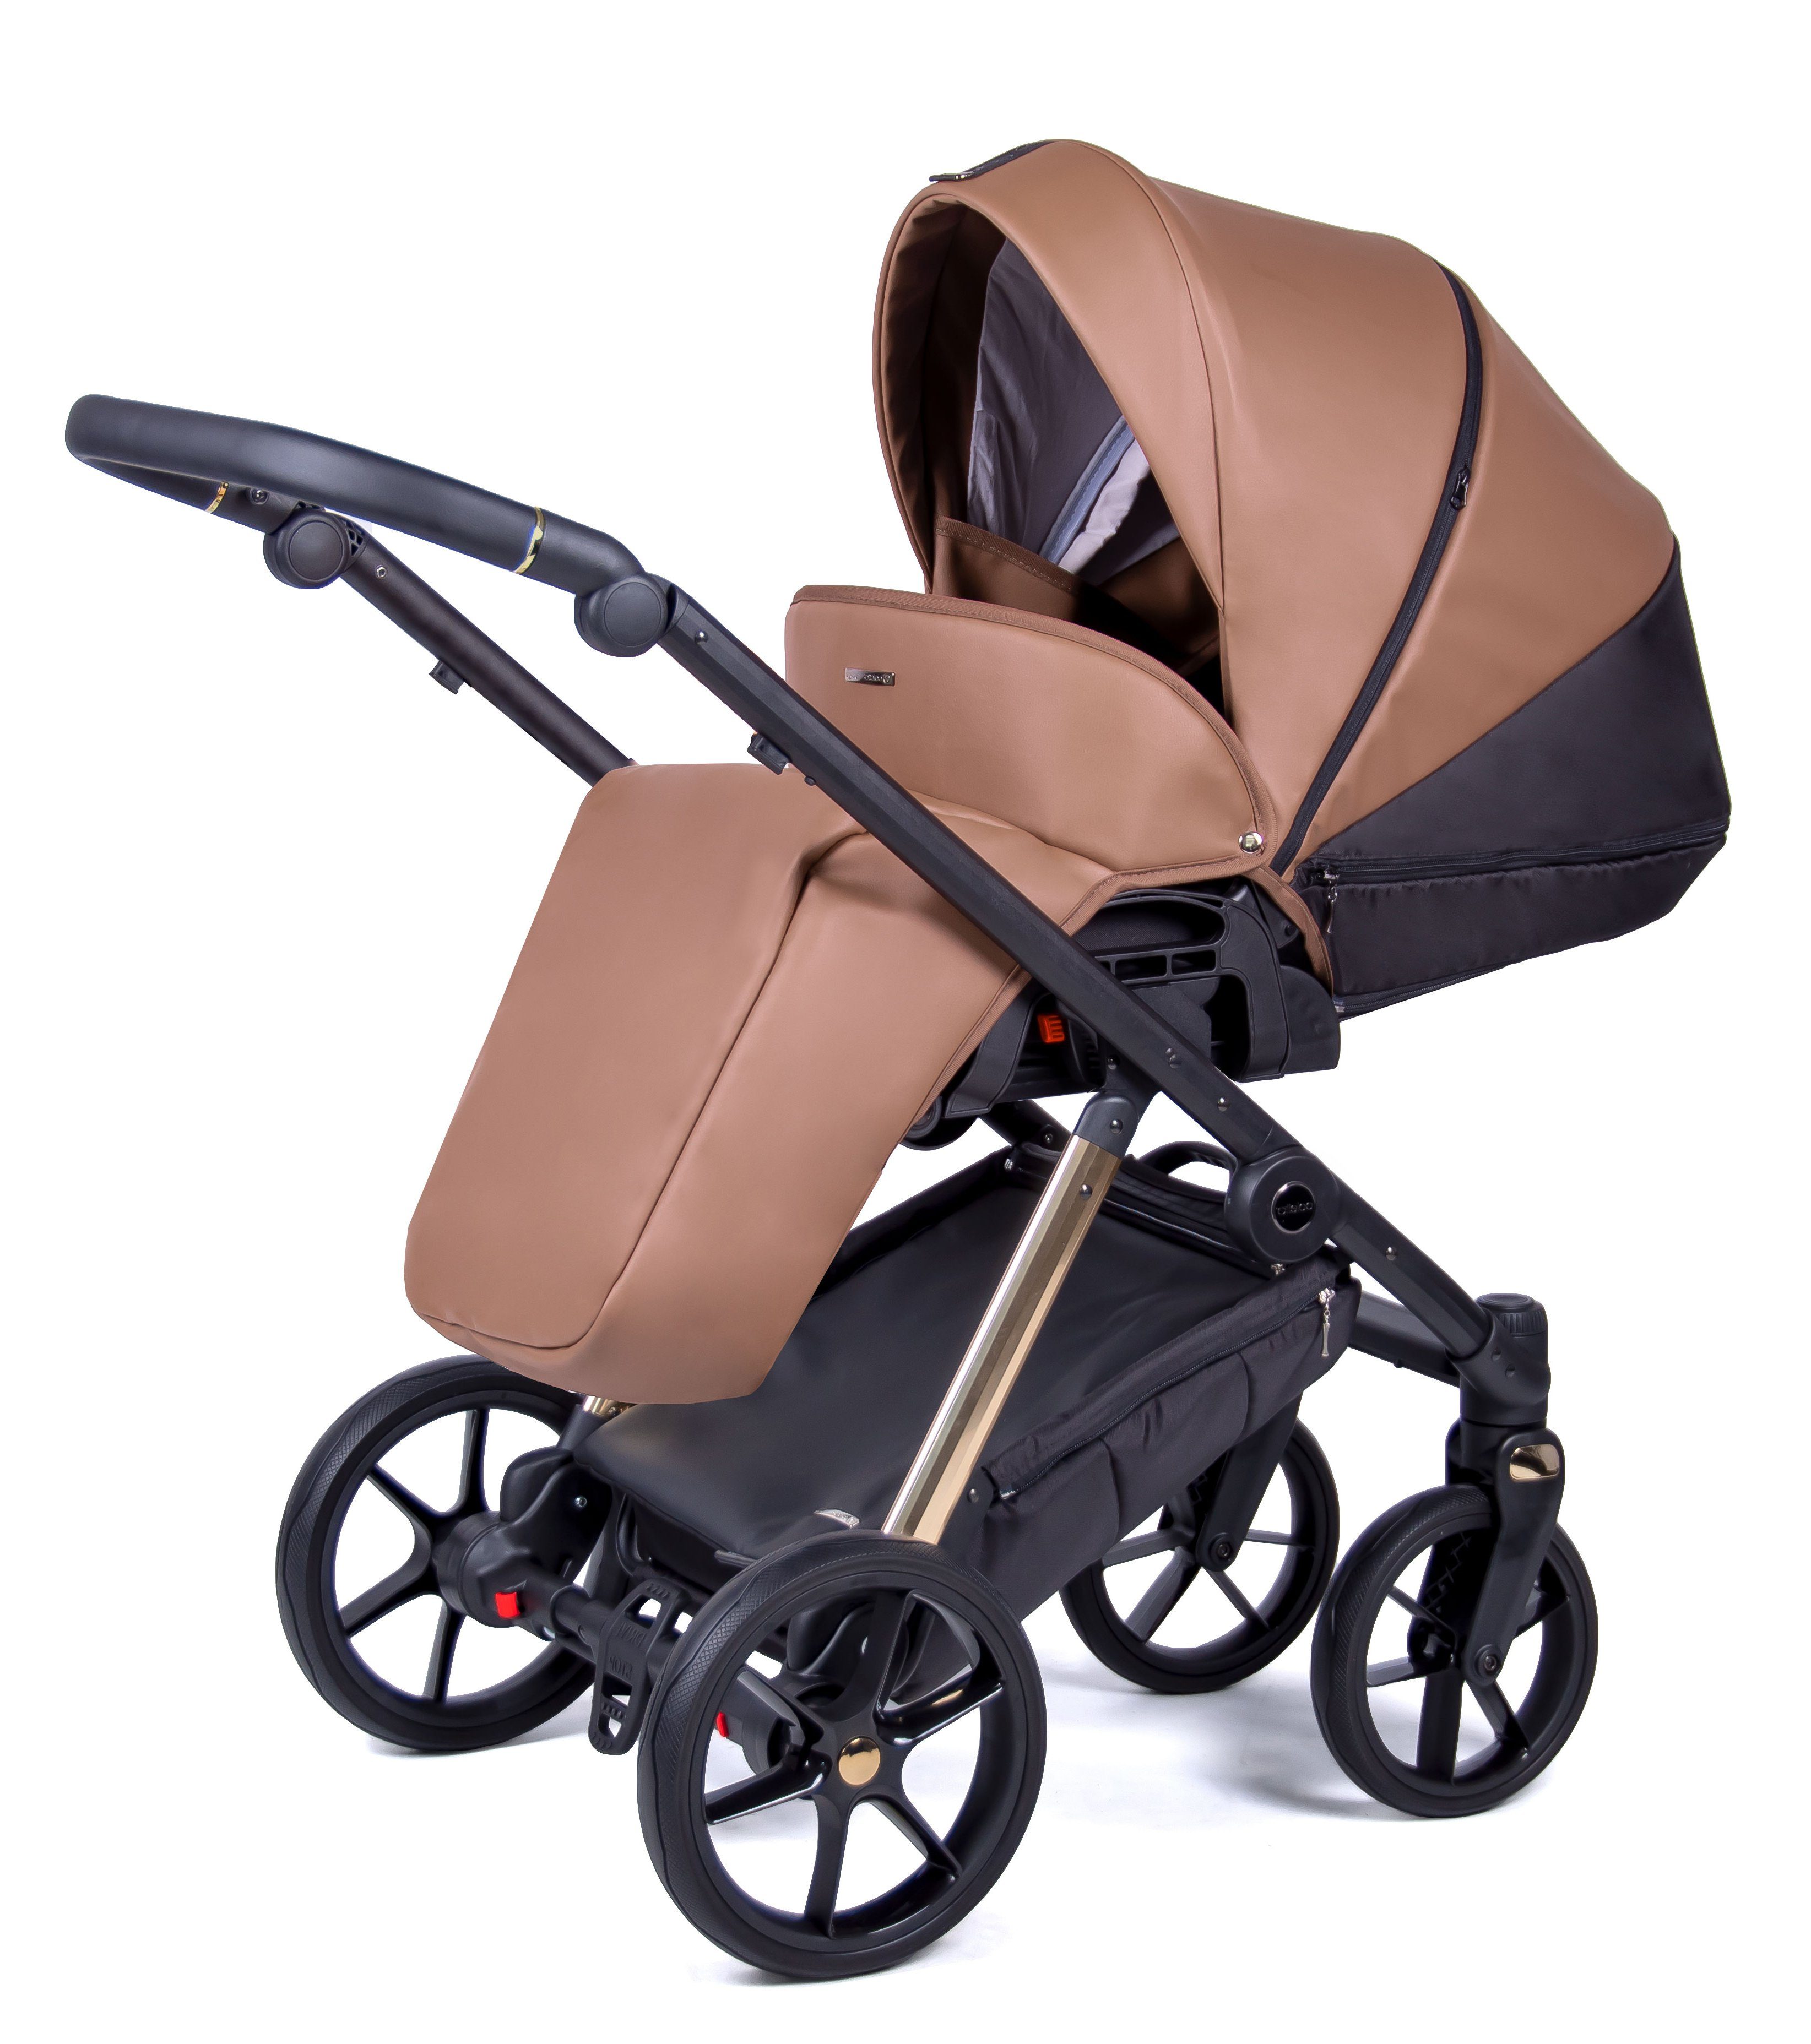 Teile Kombi-Kinderwagen 15 - = Braun Gestell in 1 12 Designs Kinderwagen-Set Axxis 3 gold - Premium in babies-on-wheels